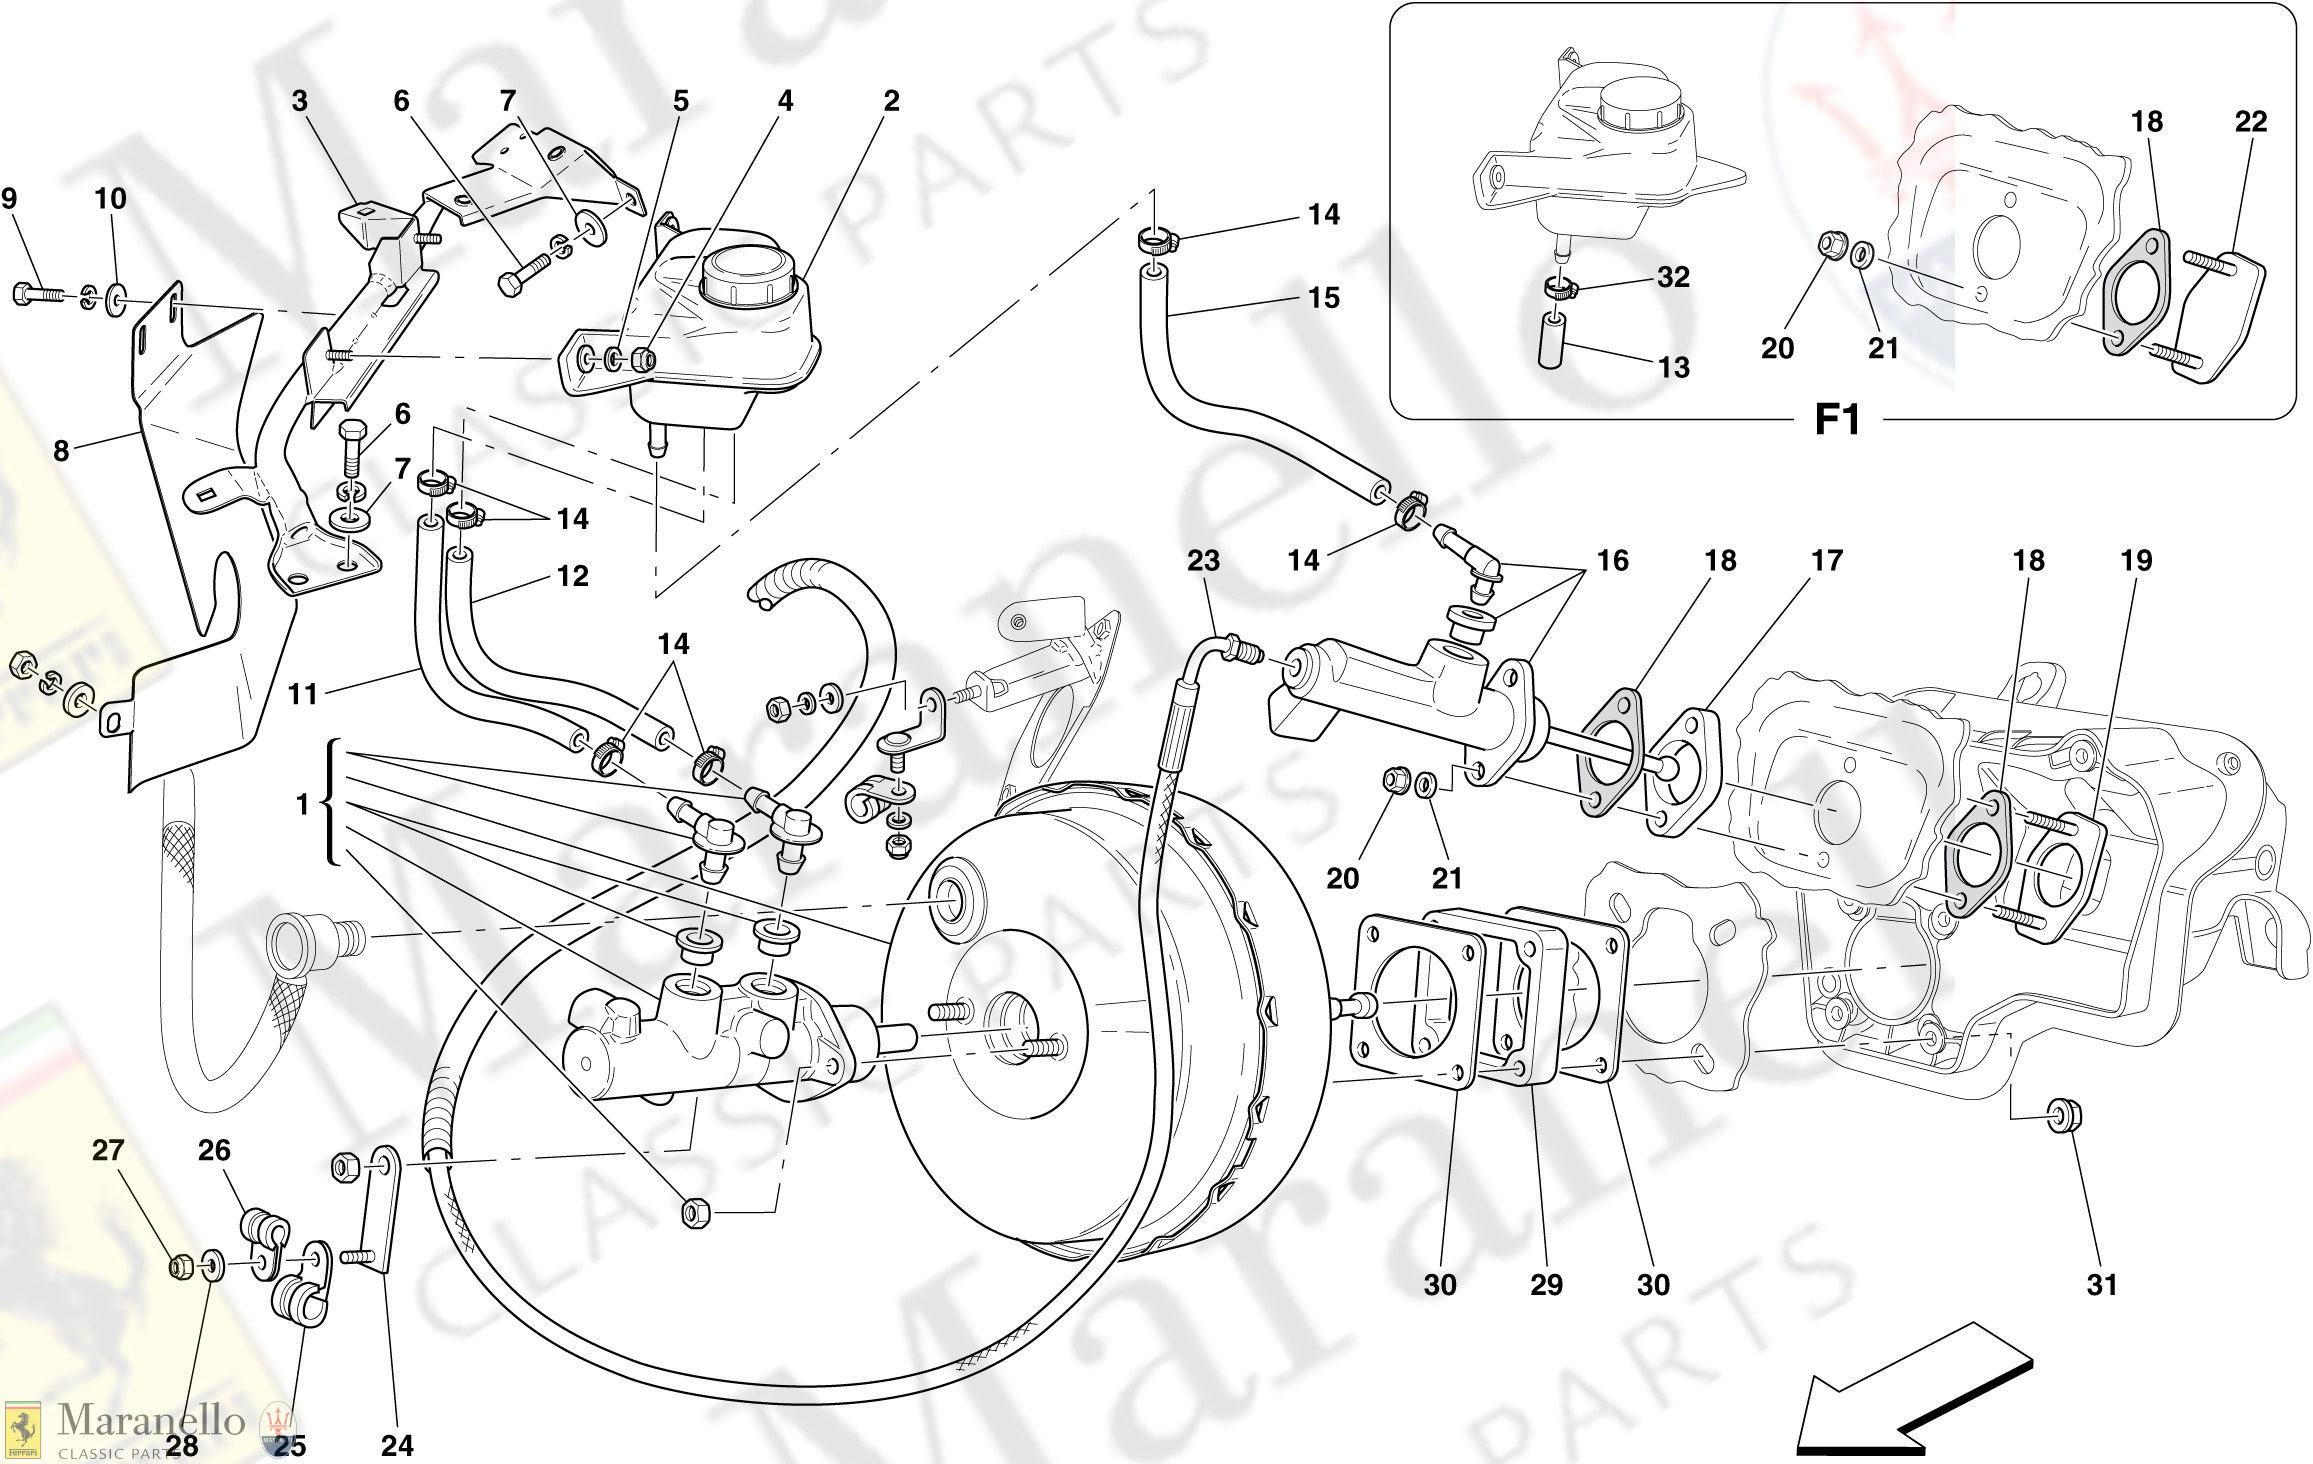 040 - Hydraulic Brake And Clutch Control